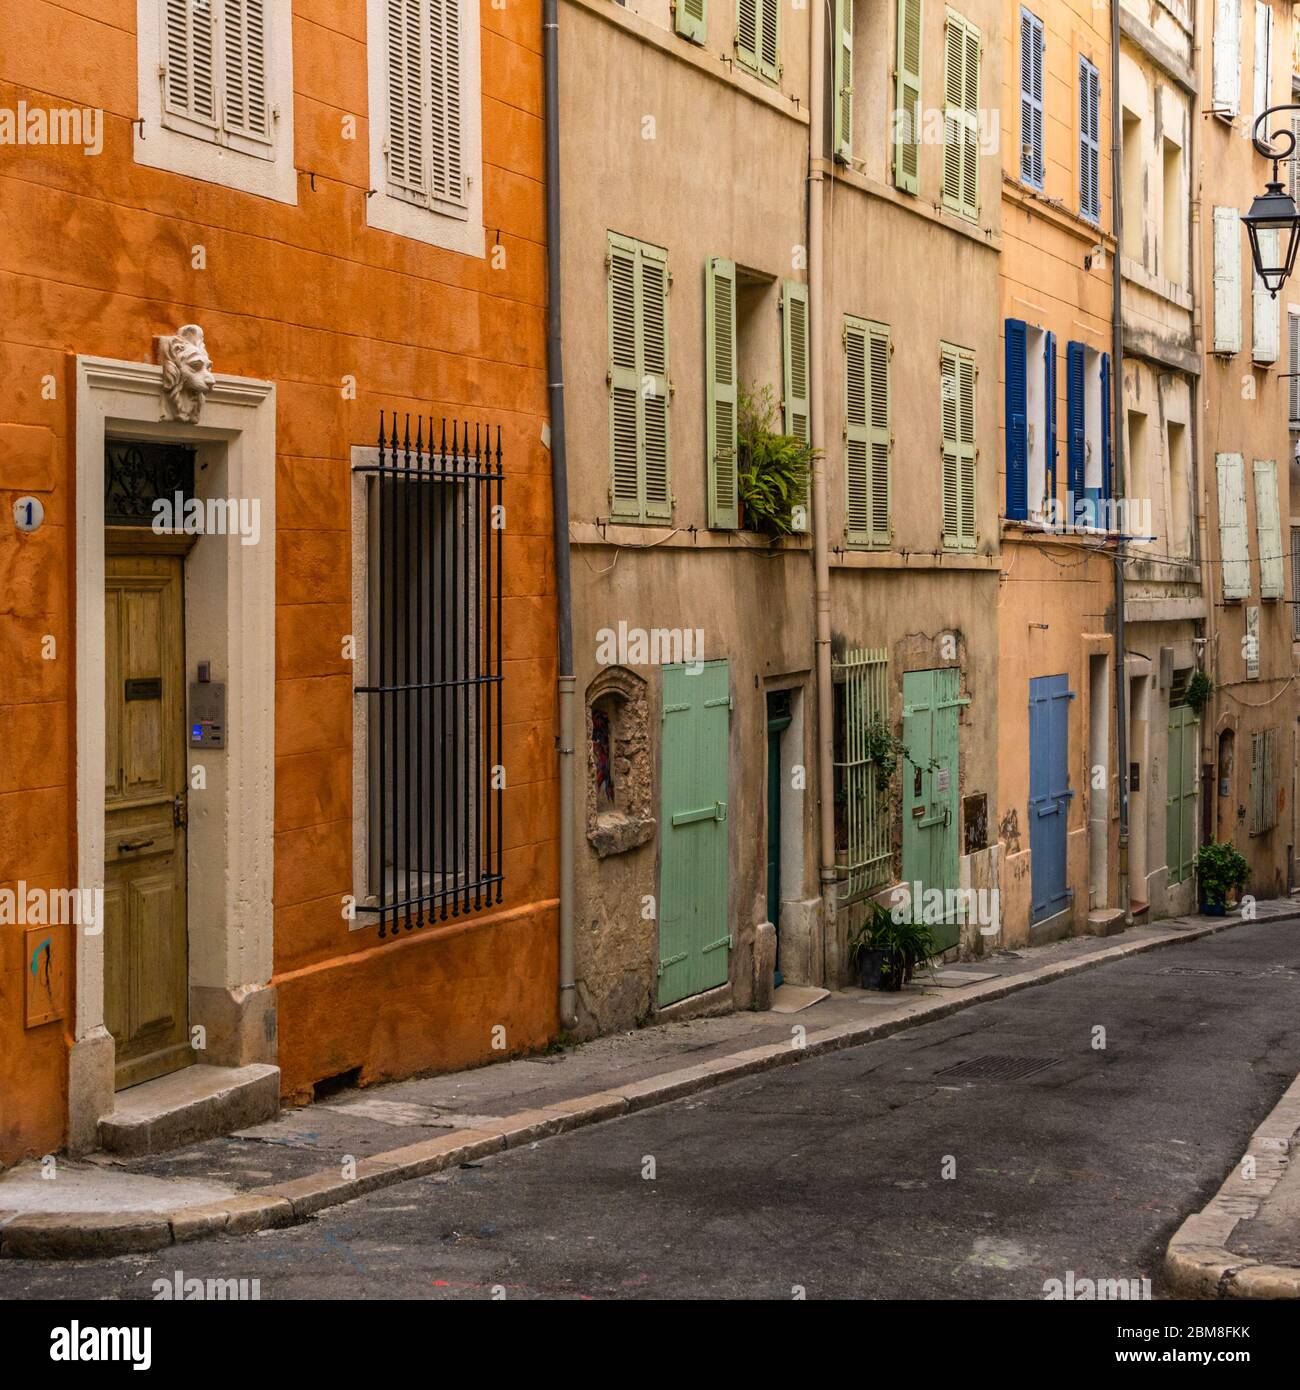 Une rue pittoresque et colorée dans le quartier du Panier, le centre historique pittoresque de Marseille, en France Banque D'Images